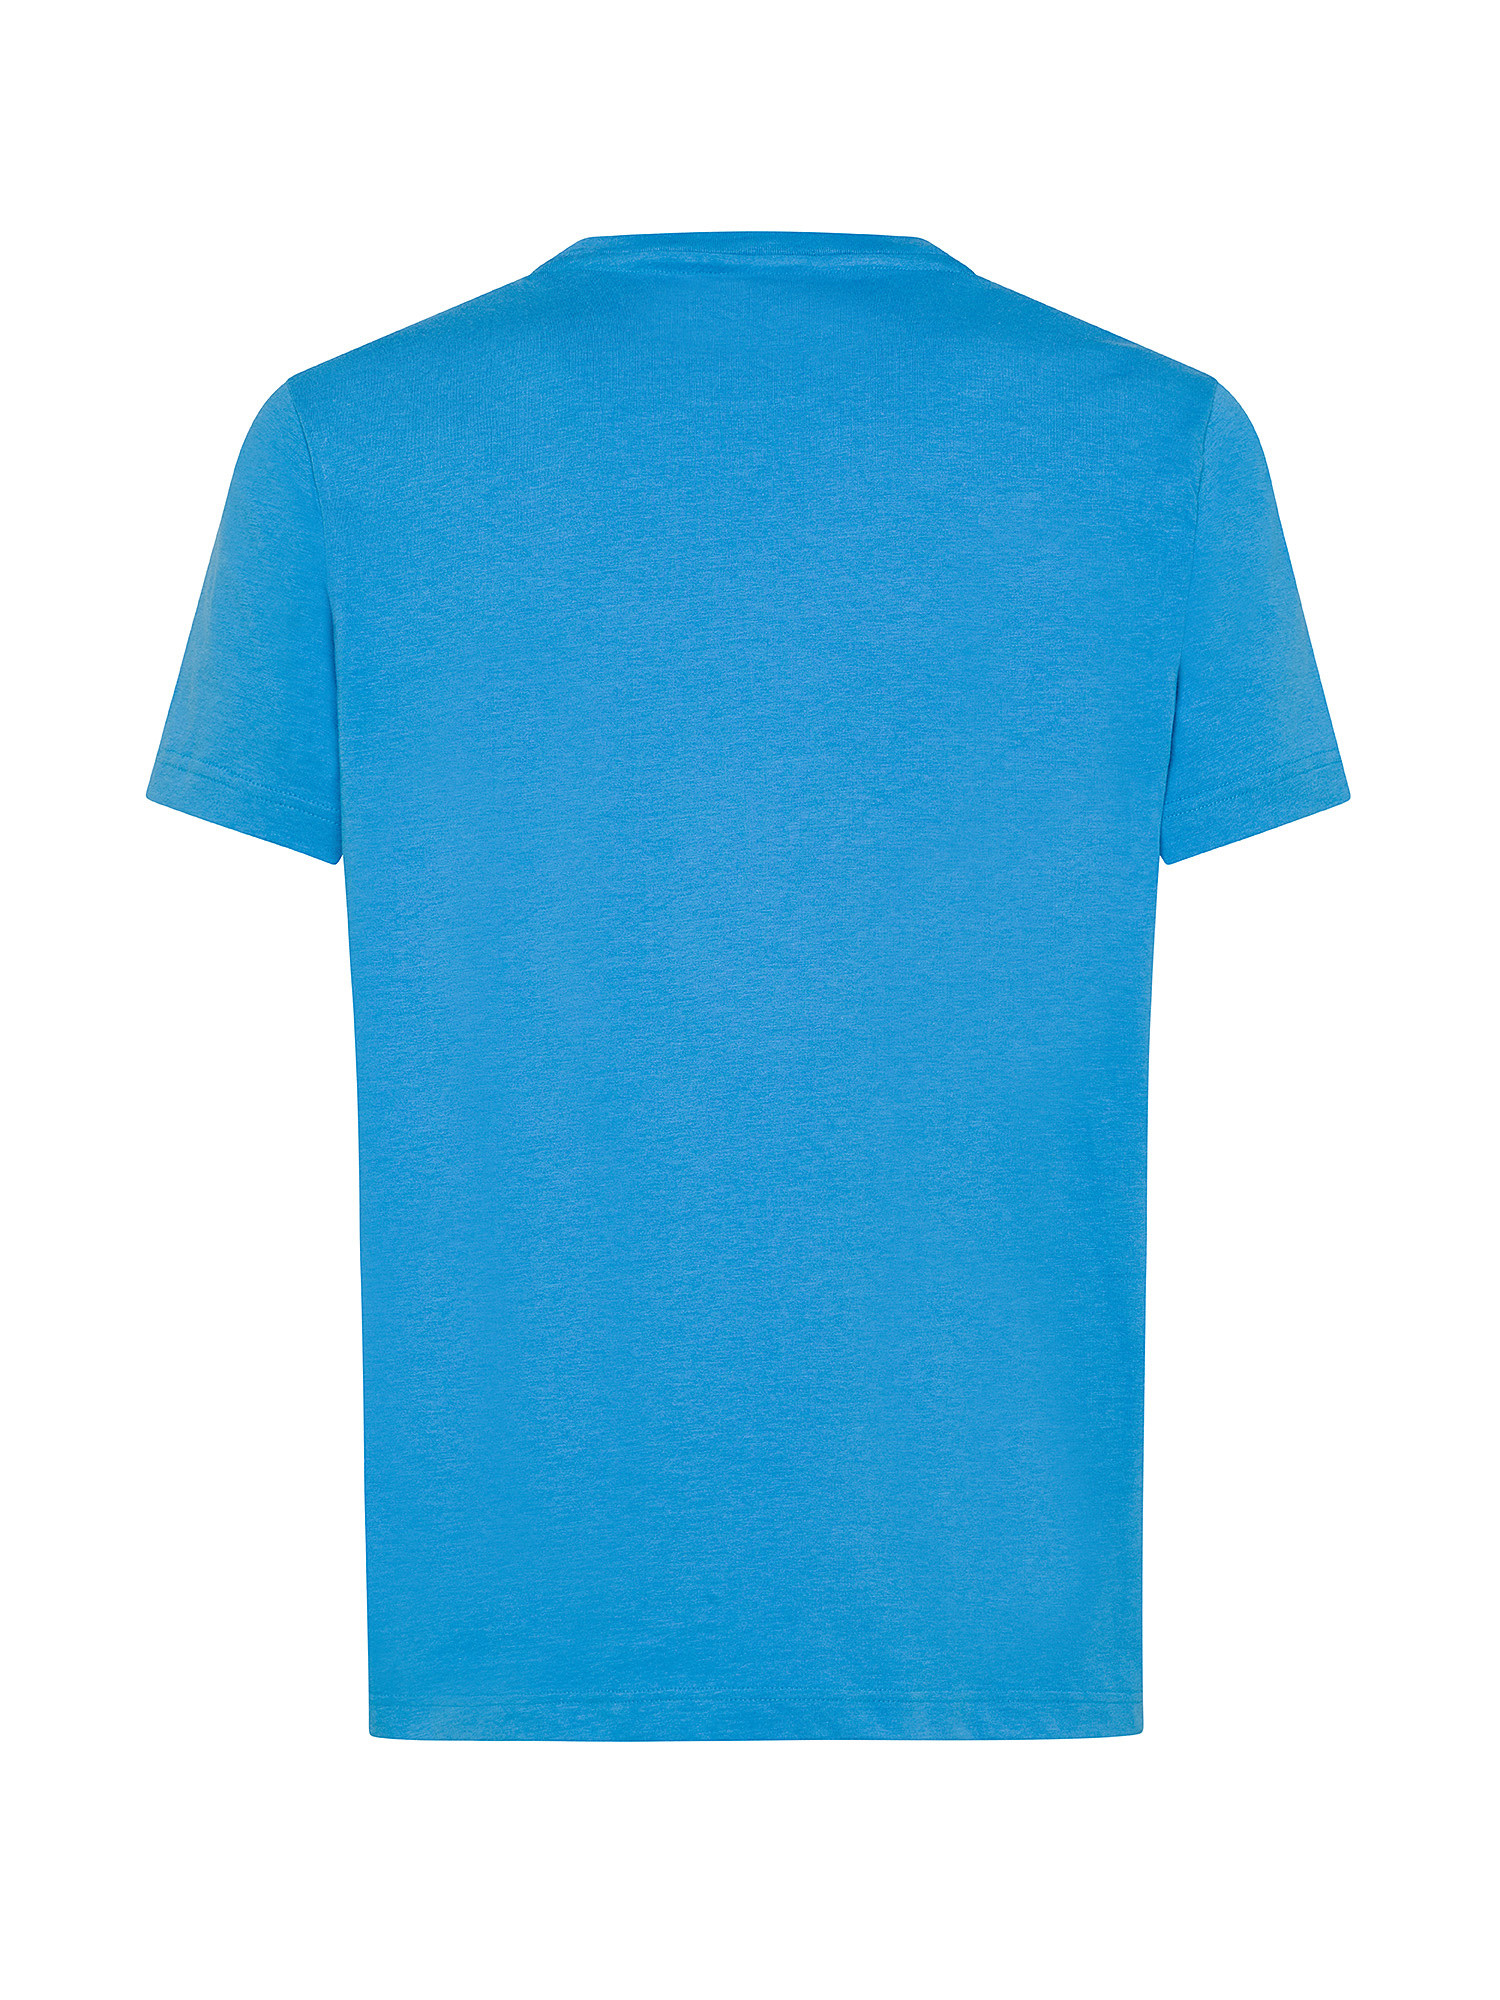 Lacoste - Regular fit sports T-shirt, Light Blue, large image number 1